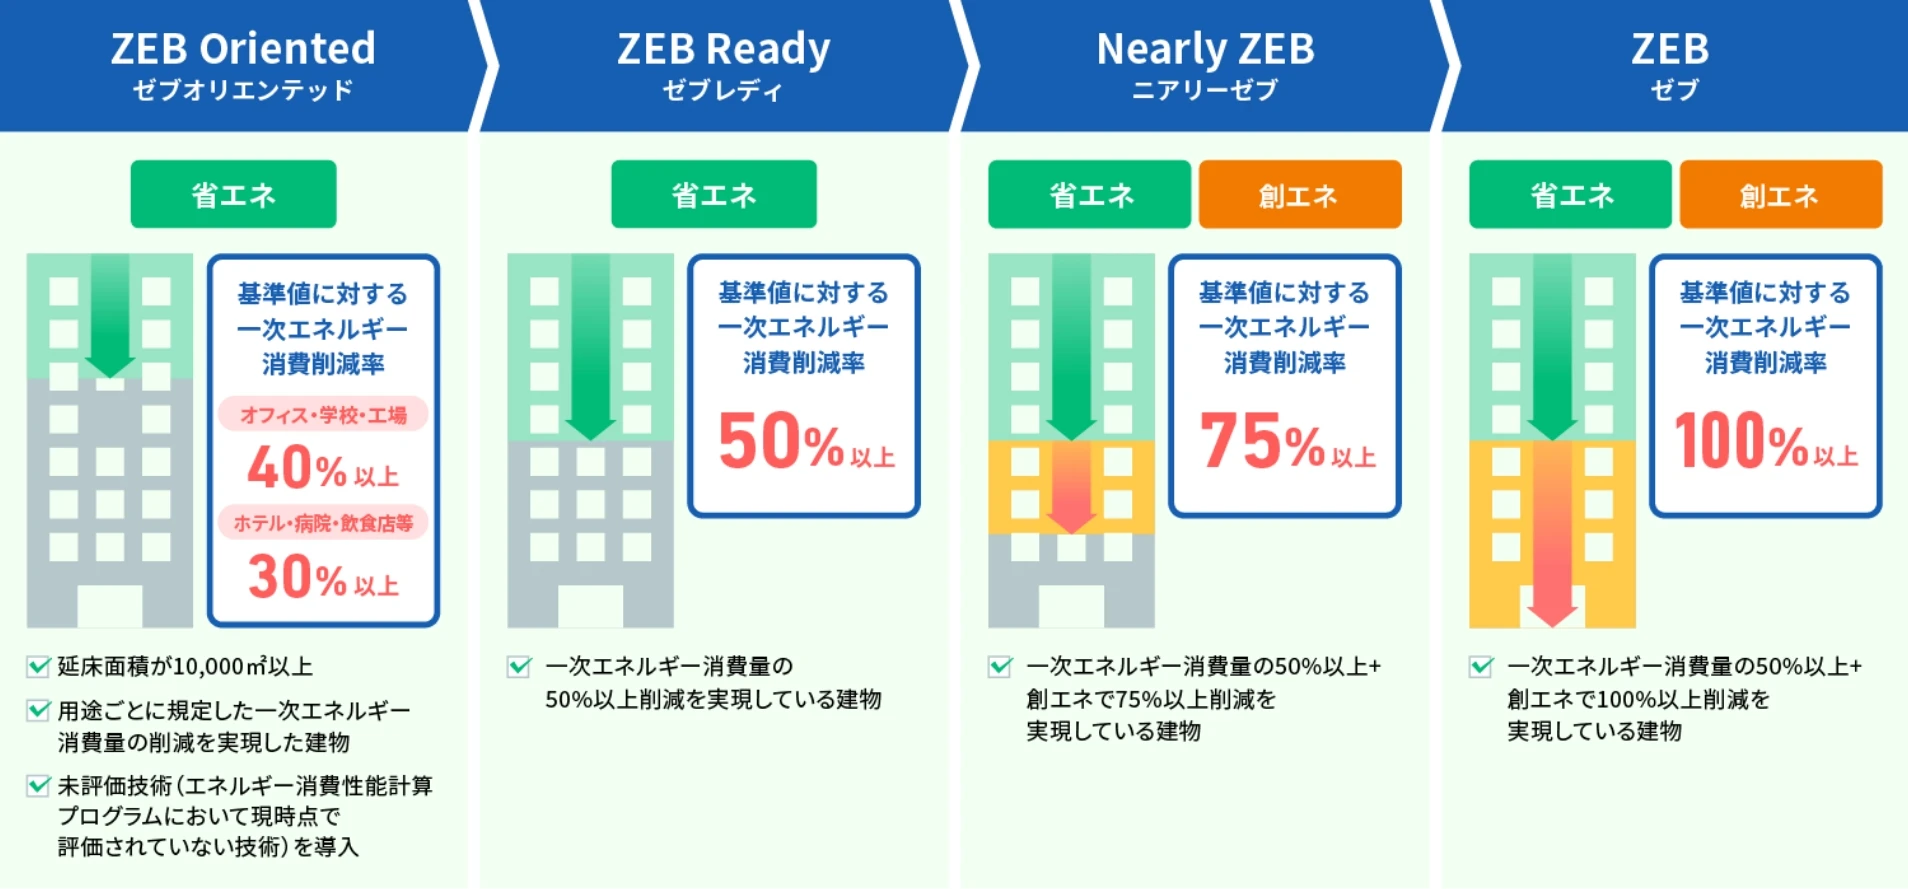 [図] ZEBの種類